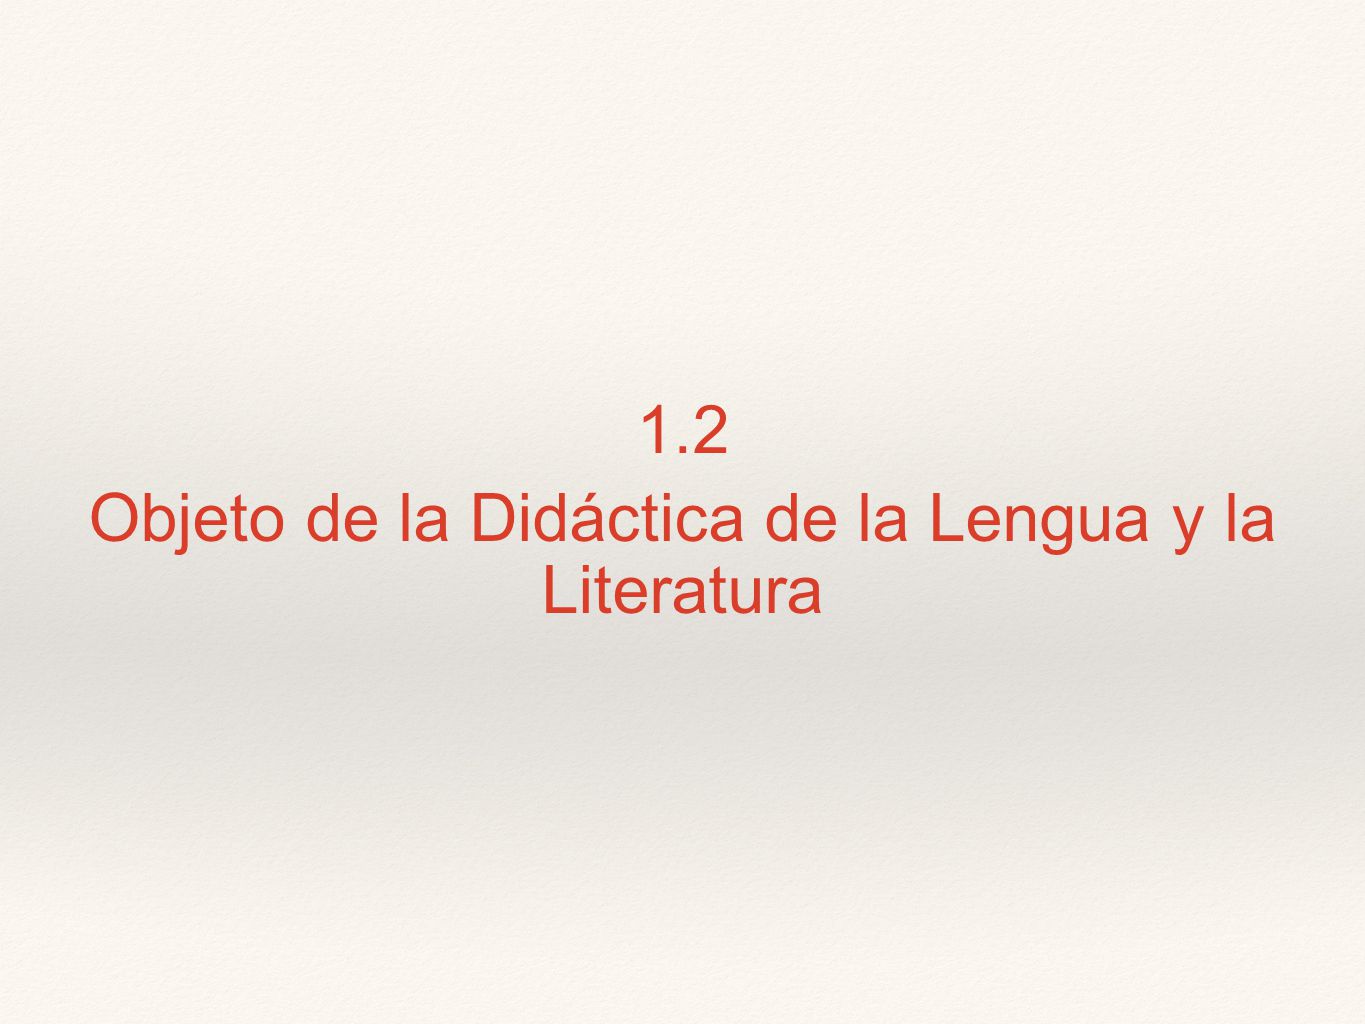 1.2 Objeto de la Didáctica de la Lengua y la Literatura